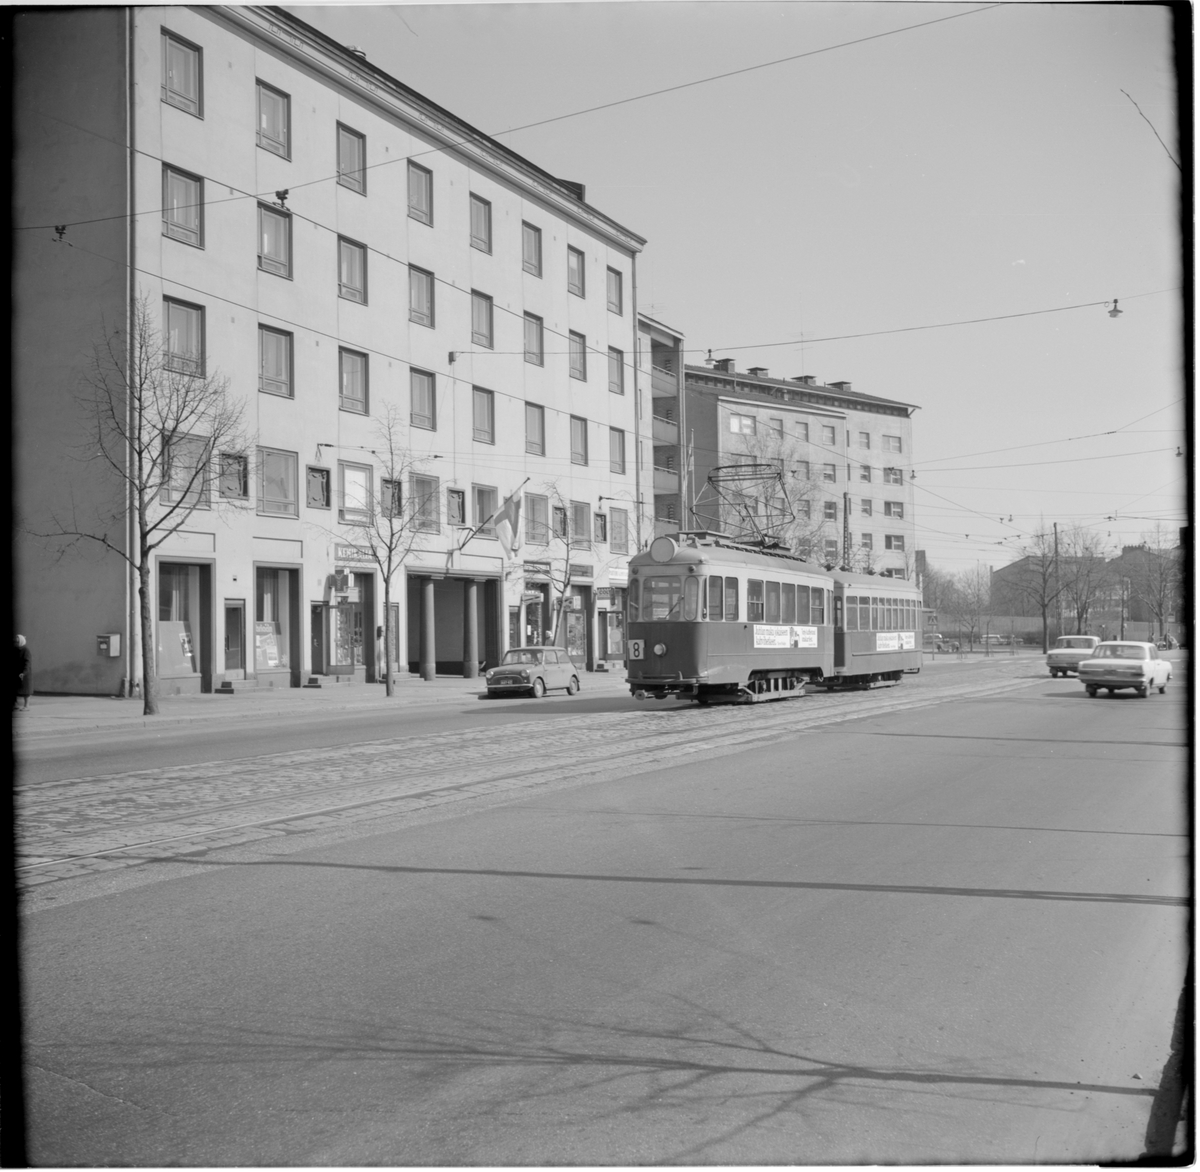 Helsingin Kaupupungin Liikennelaitos, HKL spårvagnssätt linje 8 på Tavastvägen vid vagnhall Vallgård.